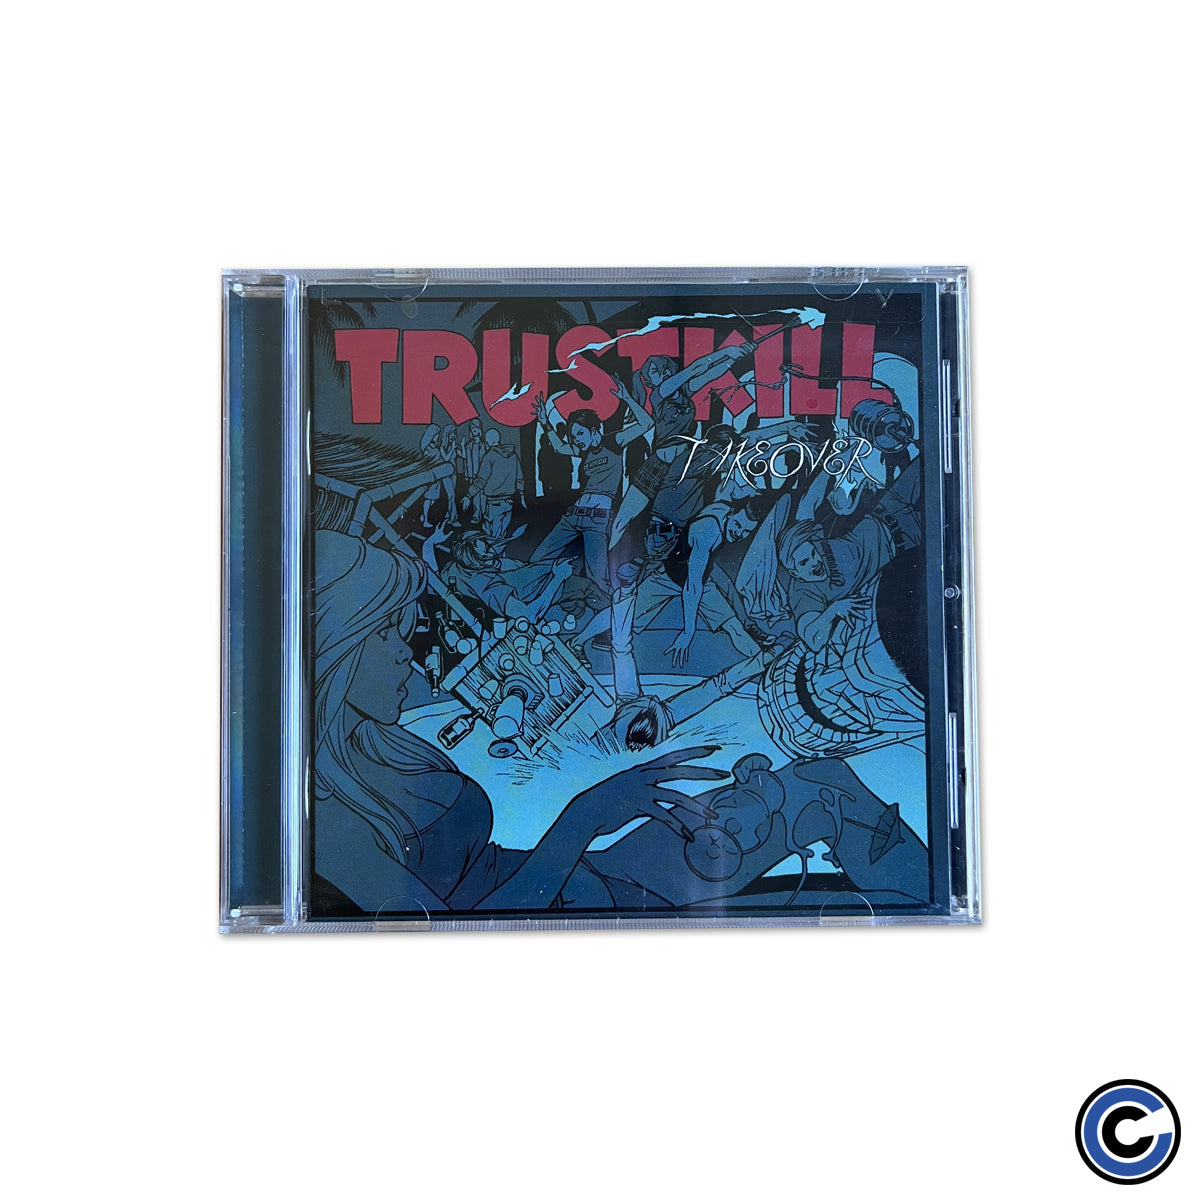 Trustkill Records 